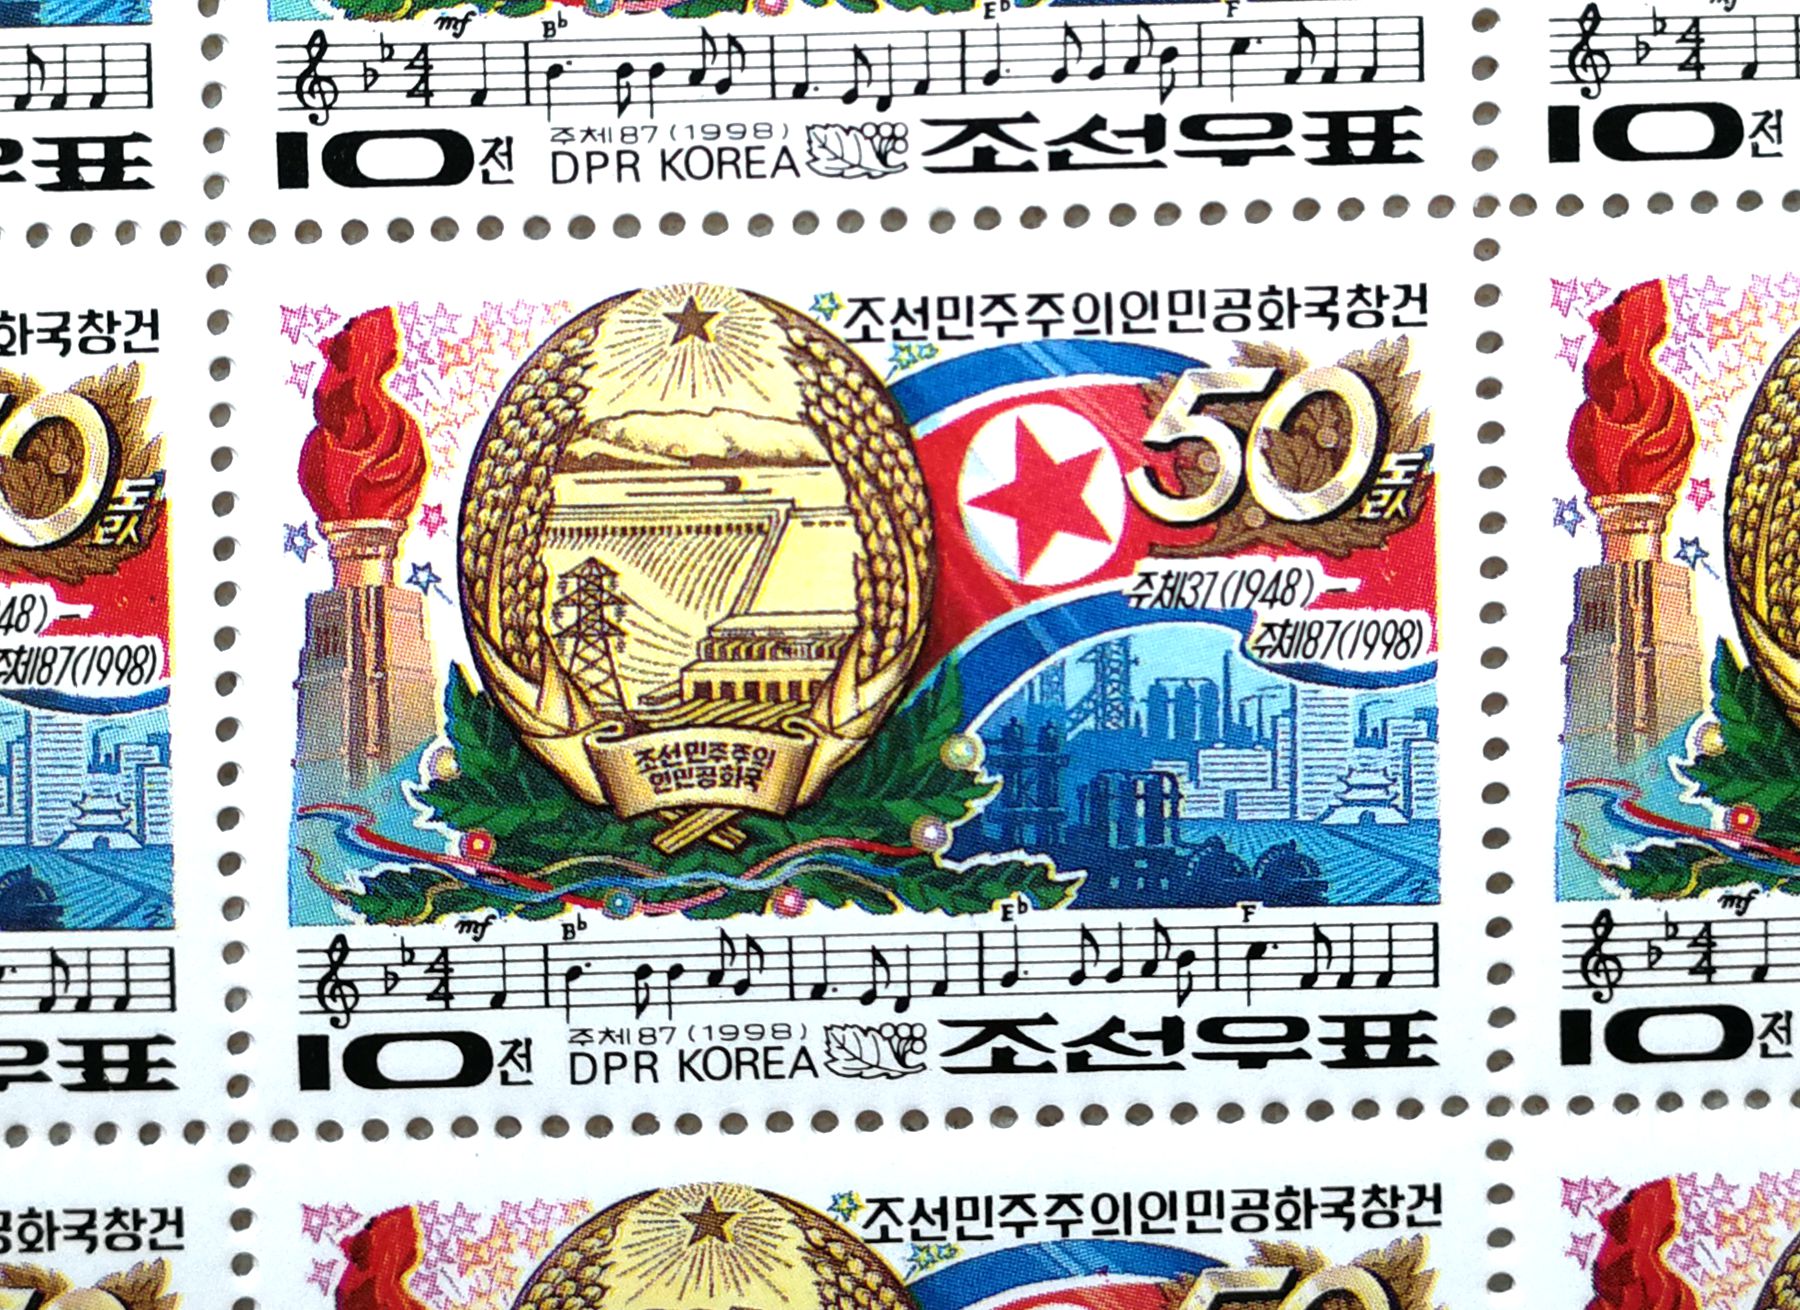 L4556, Korea "50th Anniv. of Founding of Korea", Full Sheet of 36 Pcs Stamps, 1998